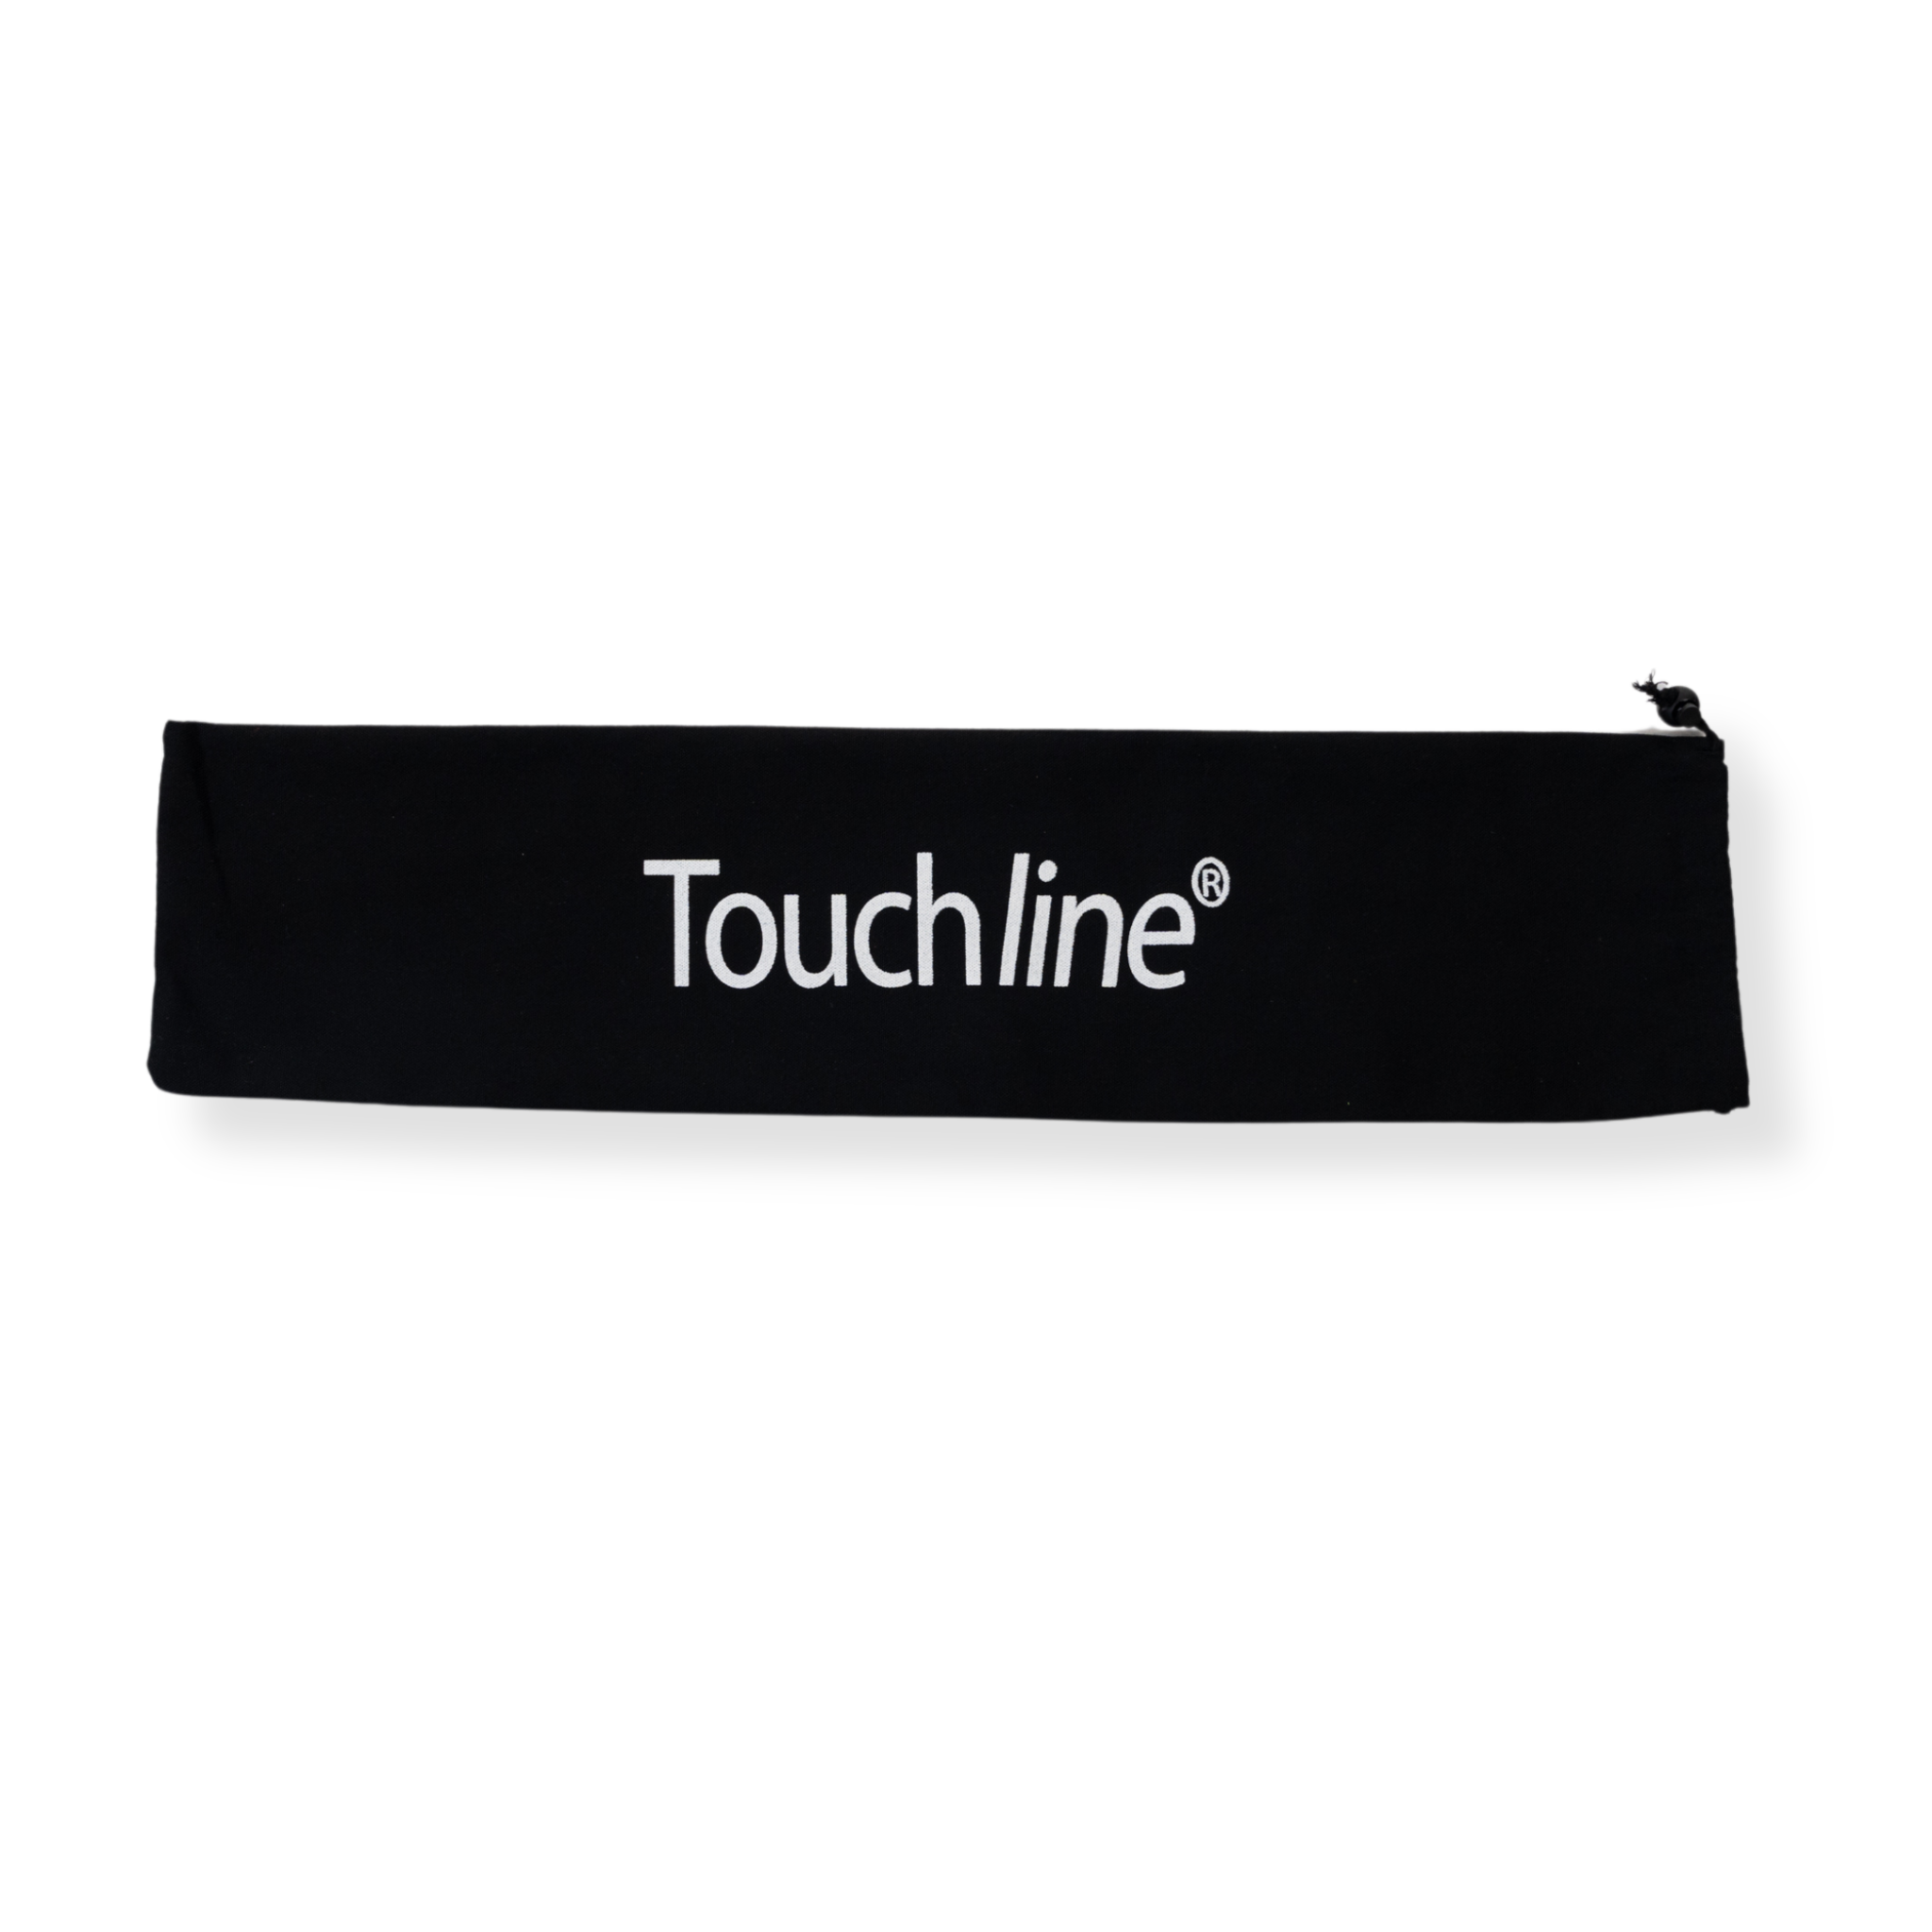 Touchline Flag Set